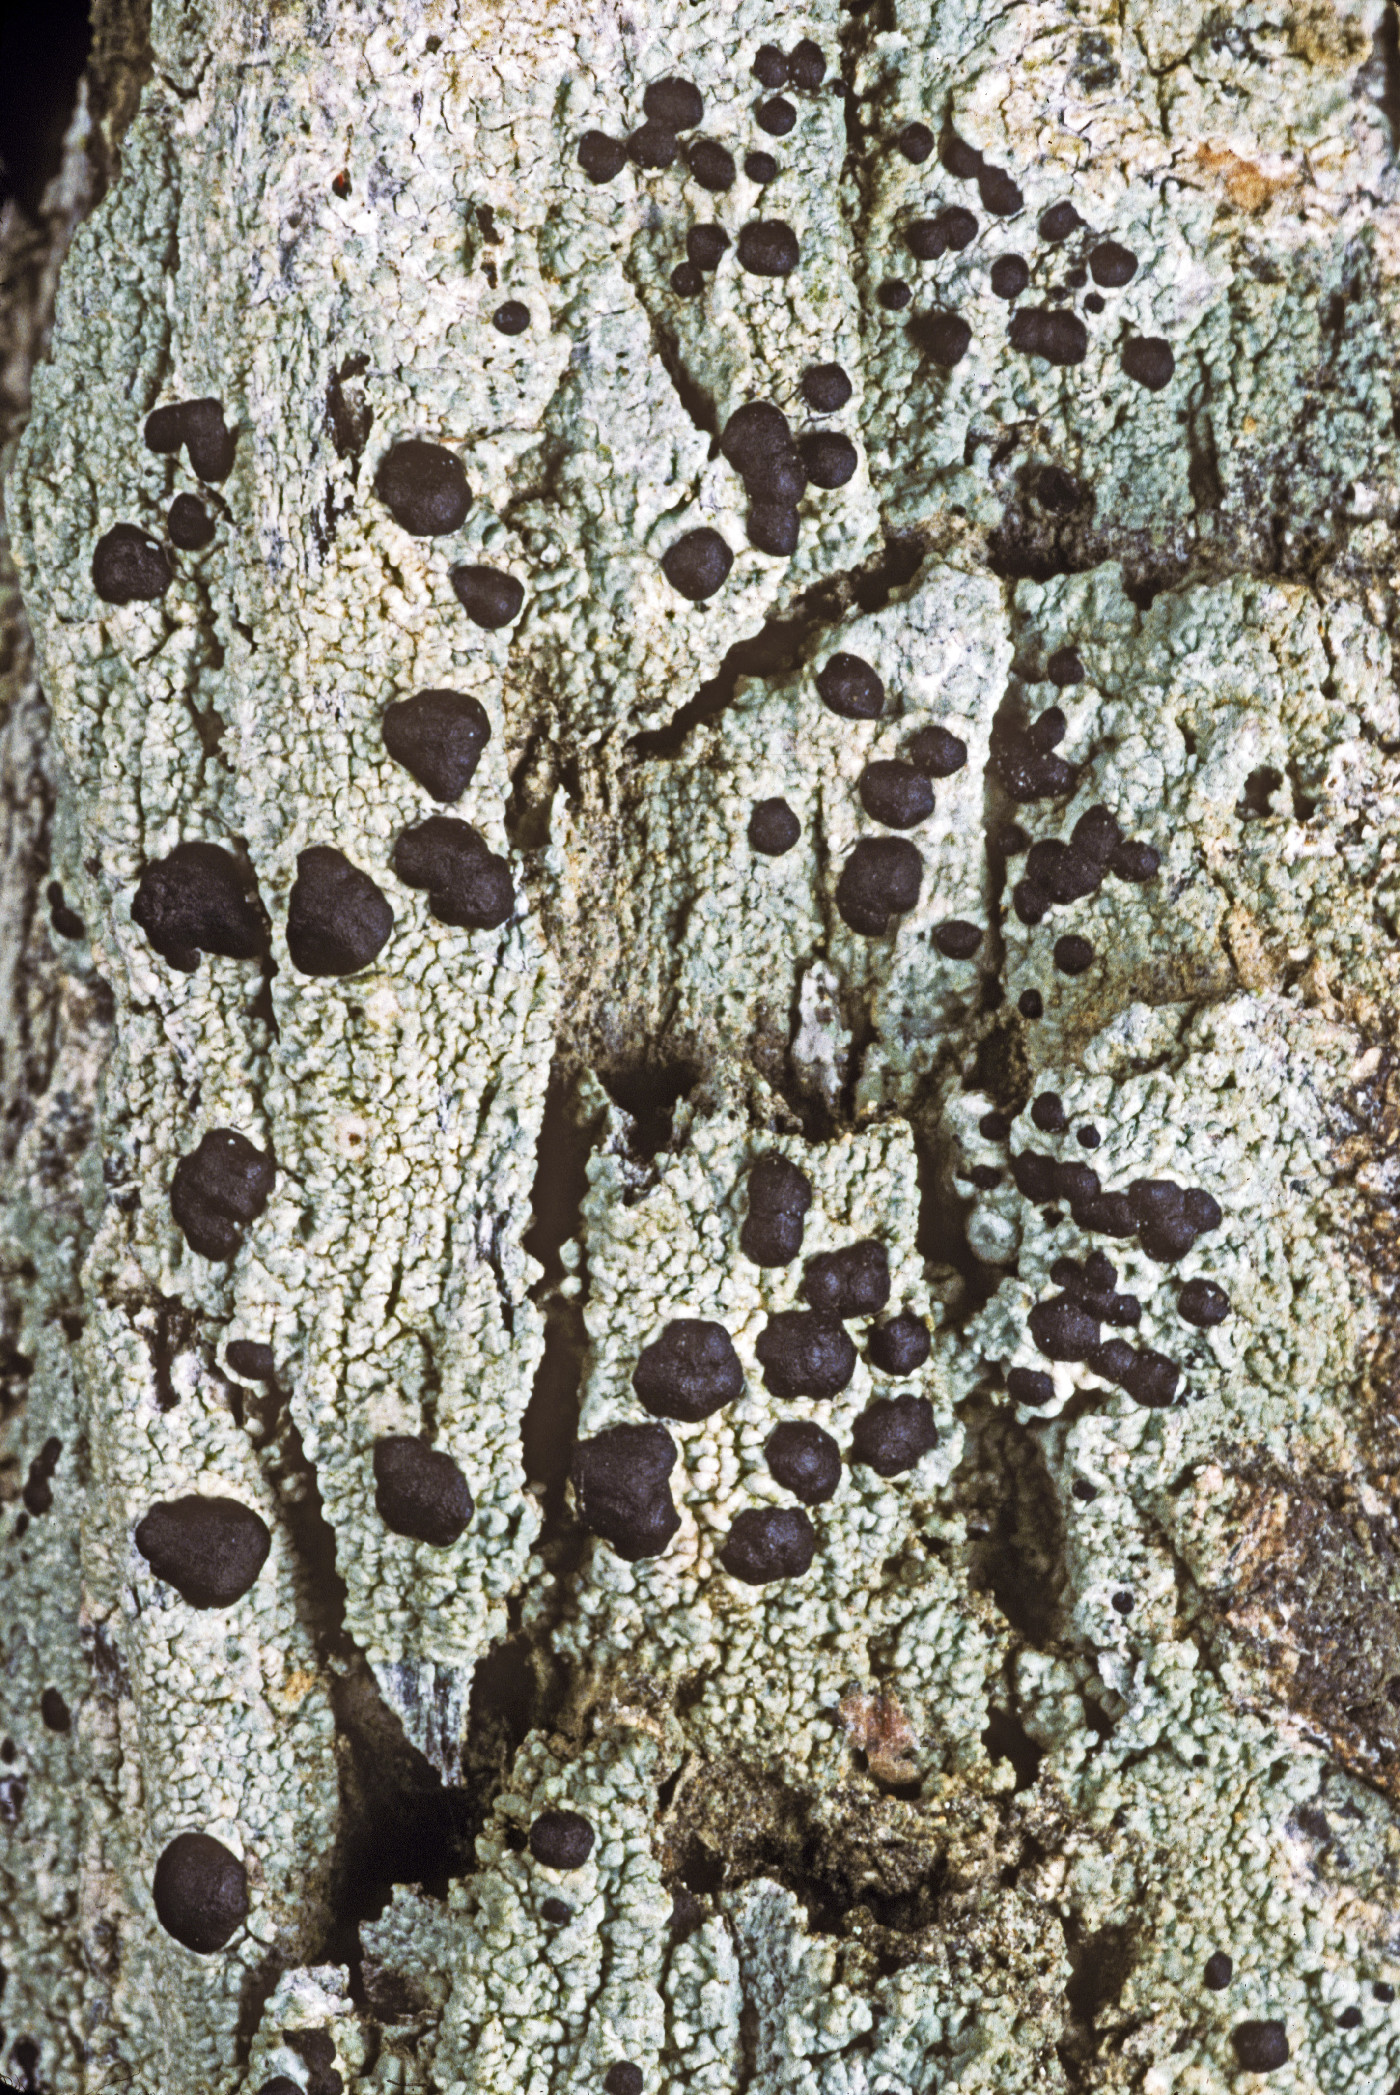 Mycoblastus sanguinarius image